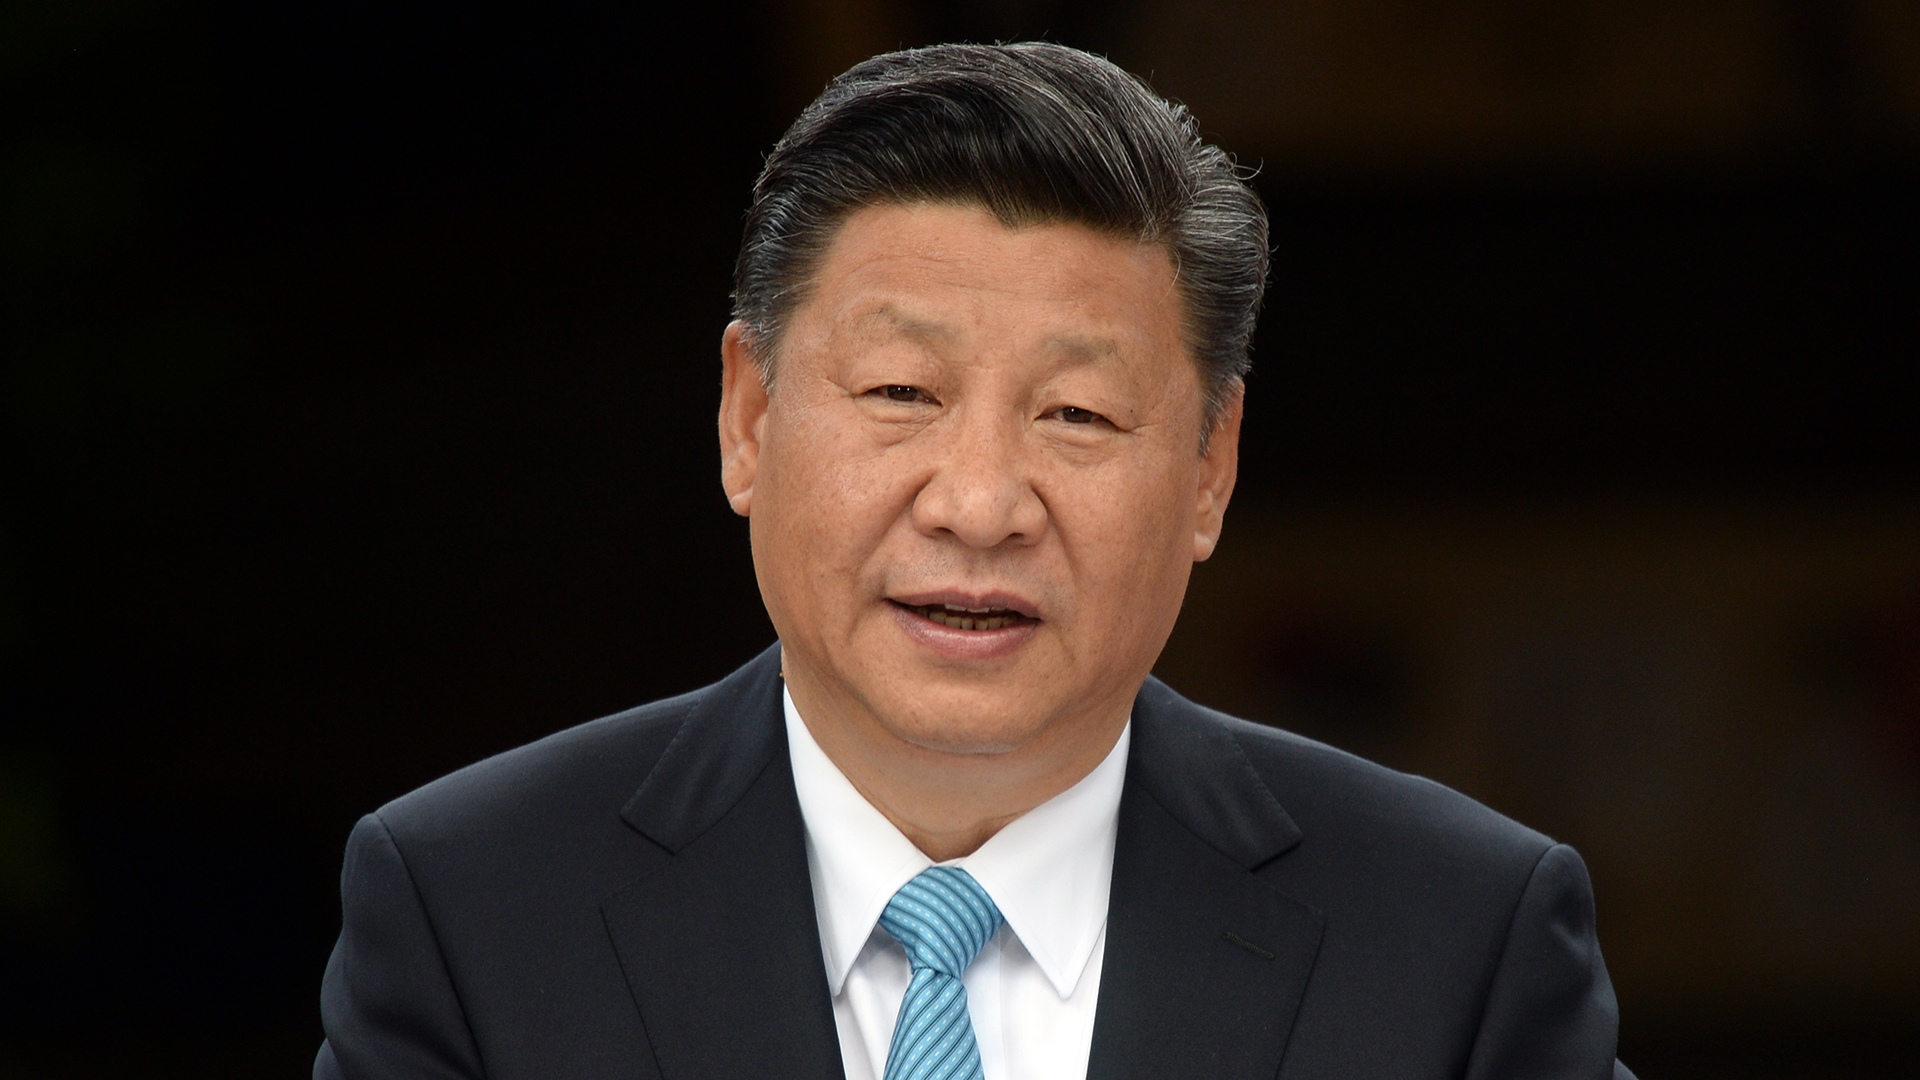 El presidente de China, Xi Jinping, ha celebrado obras anteriores de Piketty, aunque su gobierno est{a censurando su último libro (Maurizio Gambarini/dpa)
